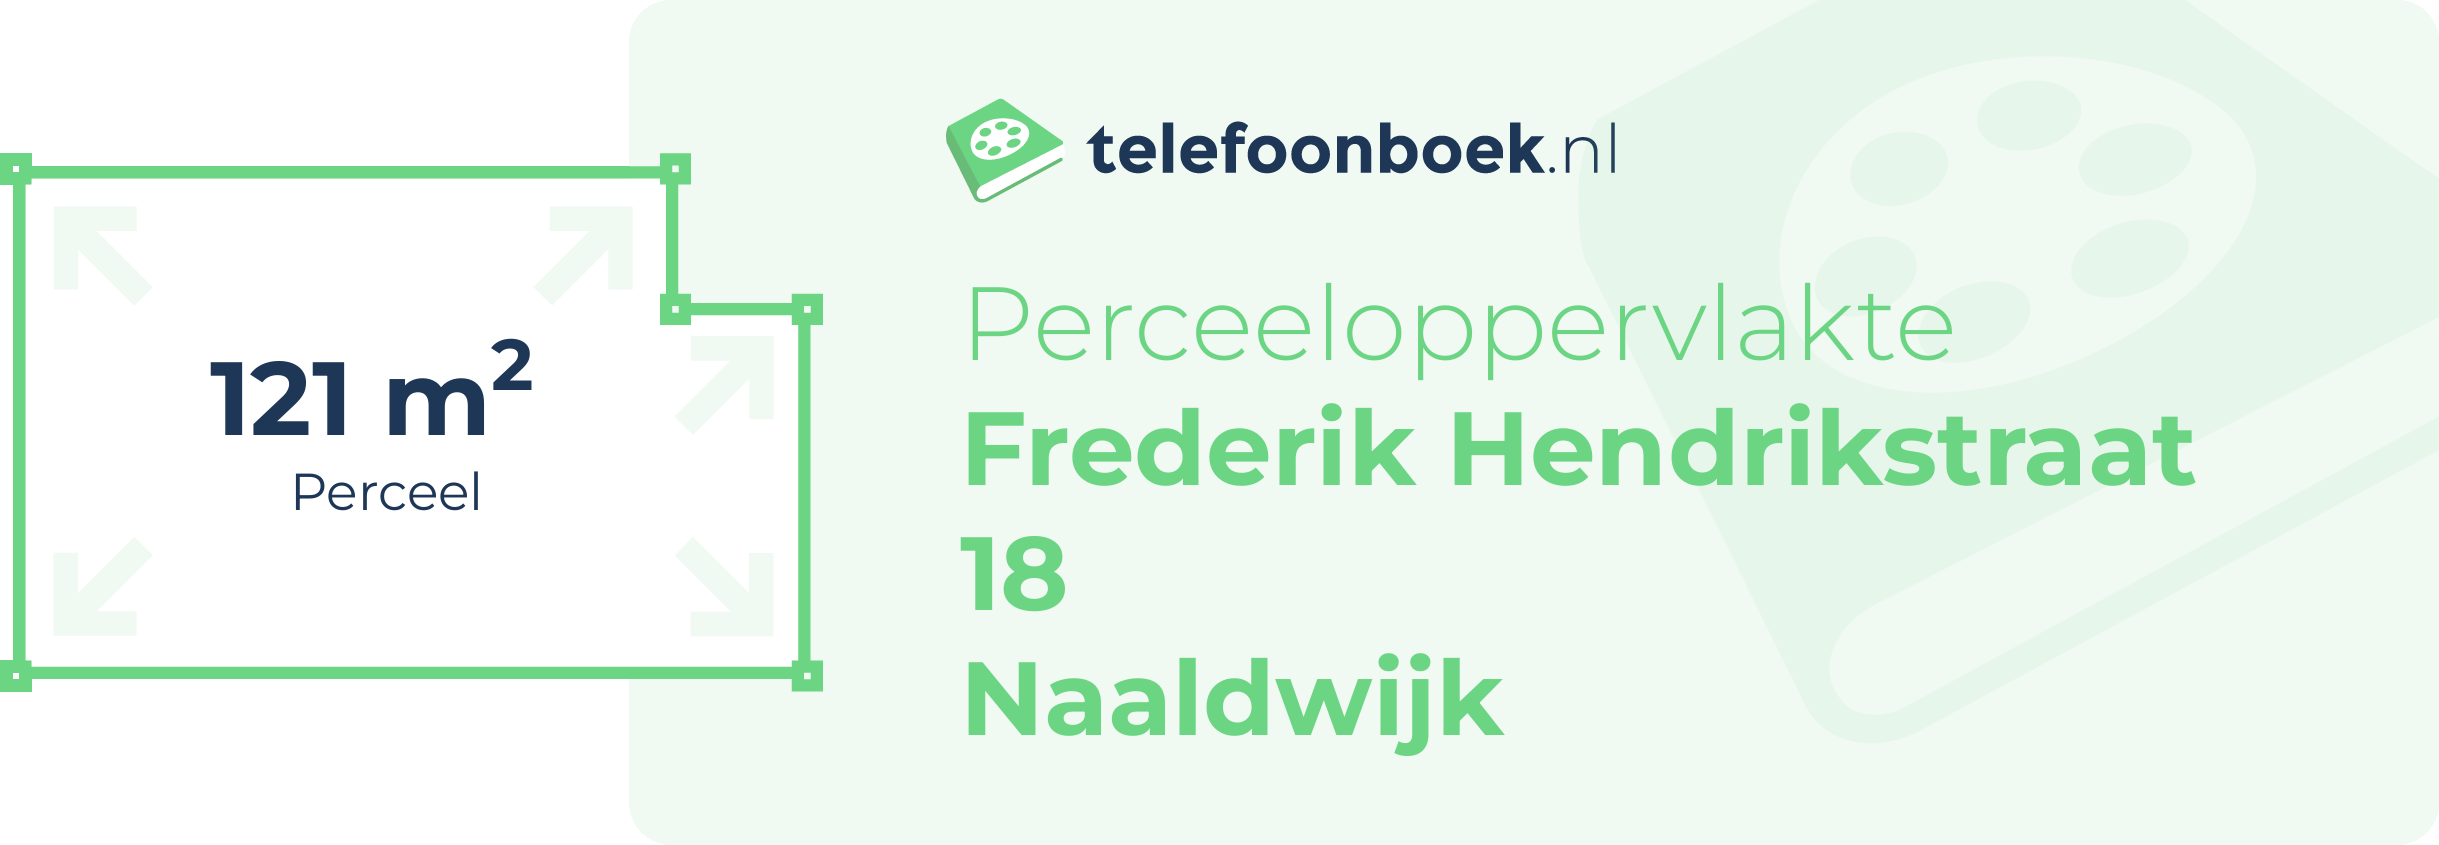 Perceeloppervlakte Frederik Hendrikstraat 18 Naaldwijk